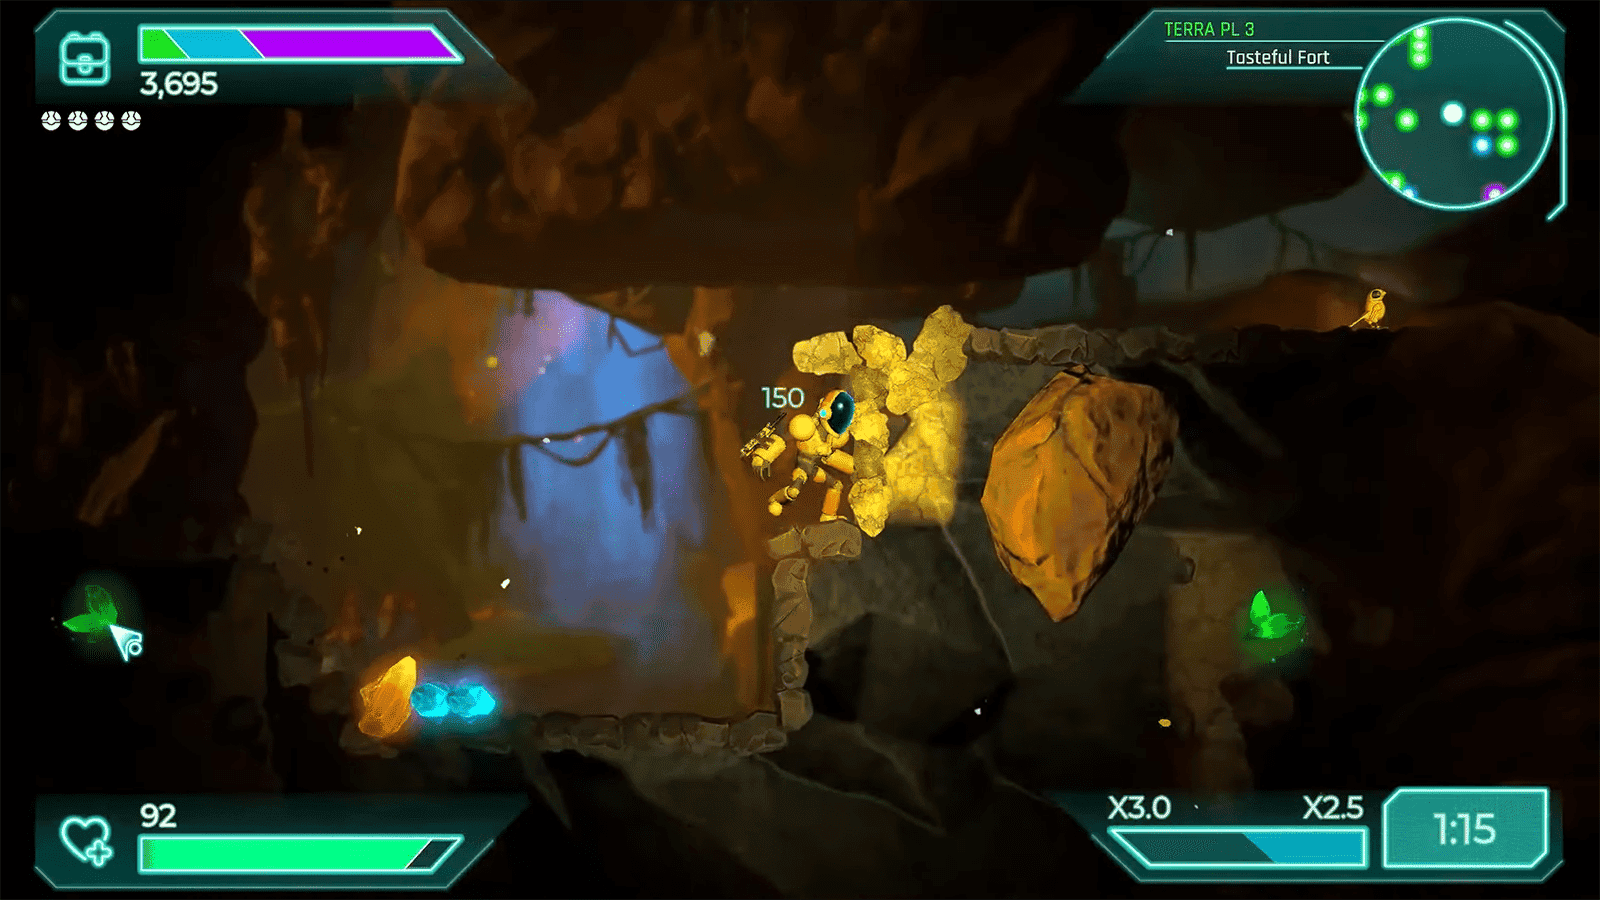 Mines of Dalarnia ist ein 2D-Action-Adventure-Spiel, das DAR als Token verwendet. Spieler können eine Vielzahl von Belohnungen im Spiel ernten und nutzen. Alle Vermögenswerte sind NFTs